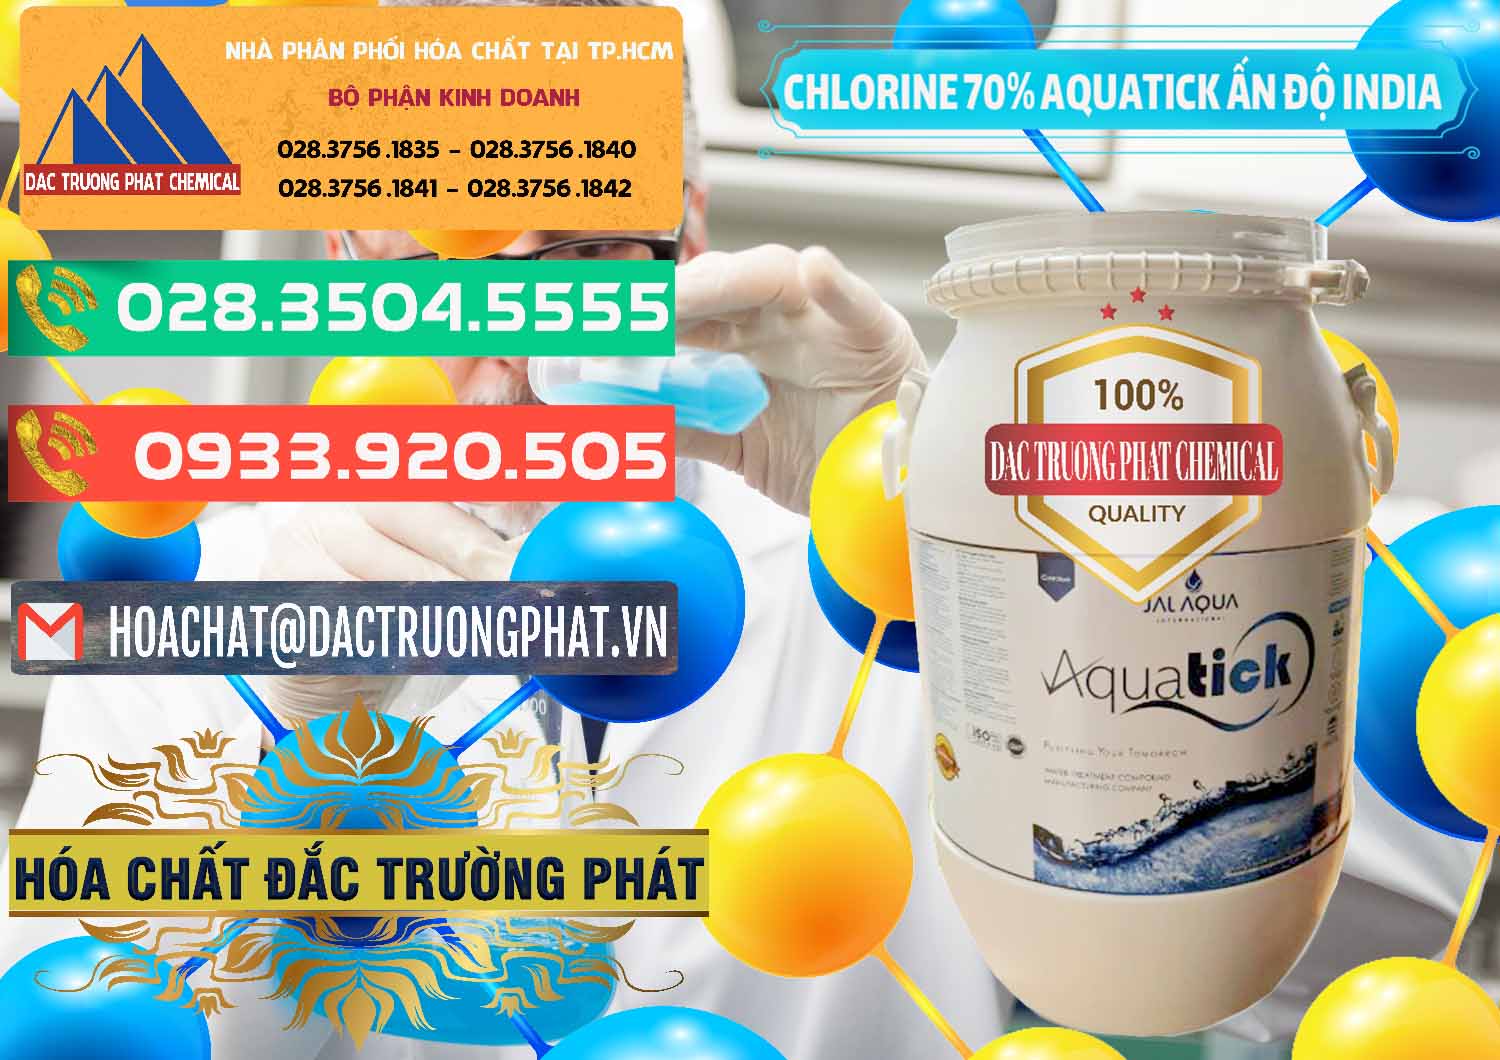 Bán Chlorine – Clorin 70% Aquatick Jal Aqua Ấn Độ India - 0215 - Cty phân phối & nhập khẩu hóa chất tại TP.HCM - congtyhoachat.com.vn